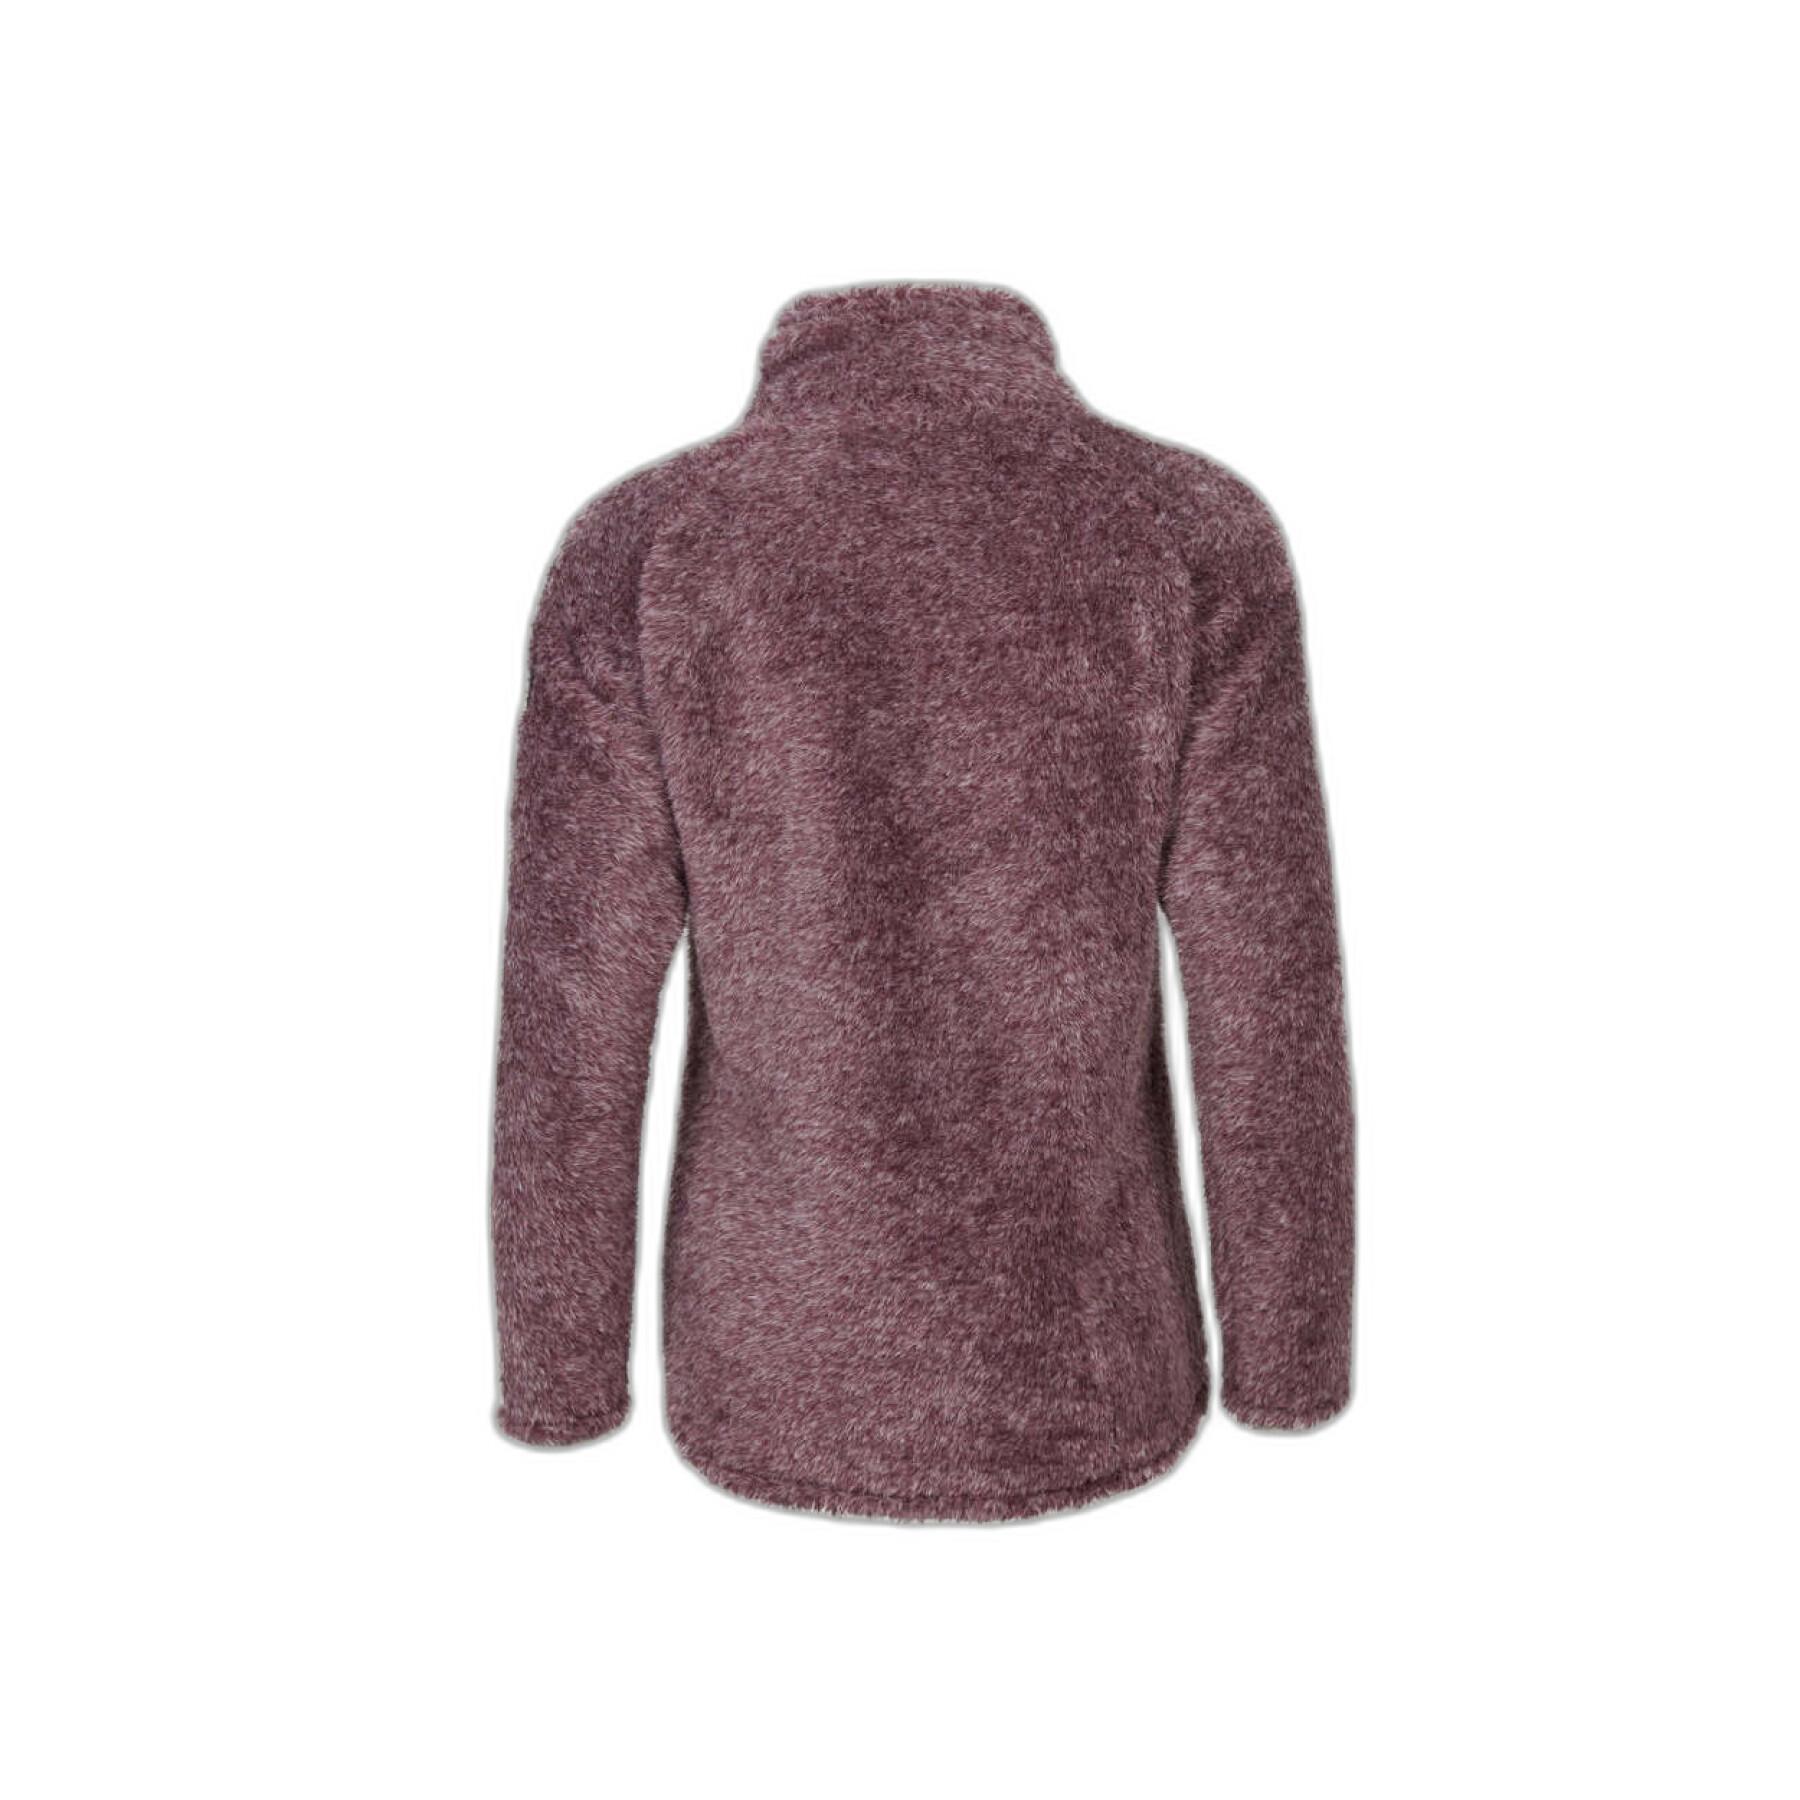 Dames fleece sweater O'Neill Hazel